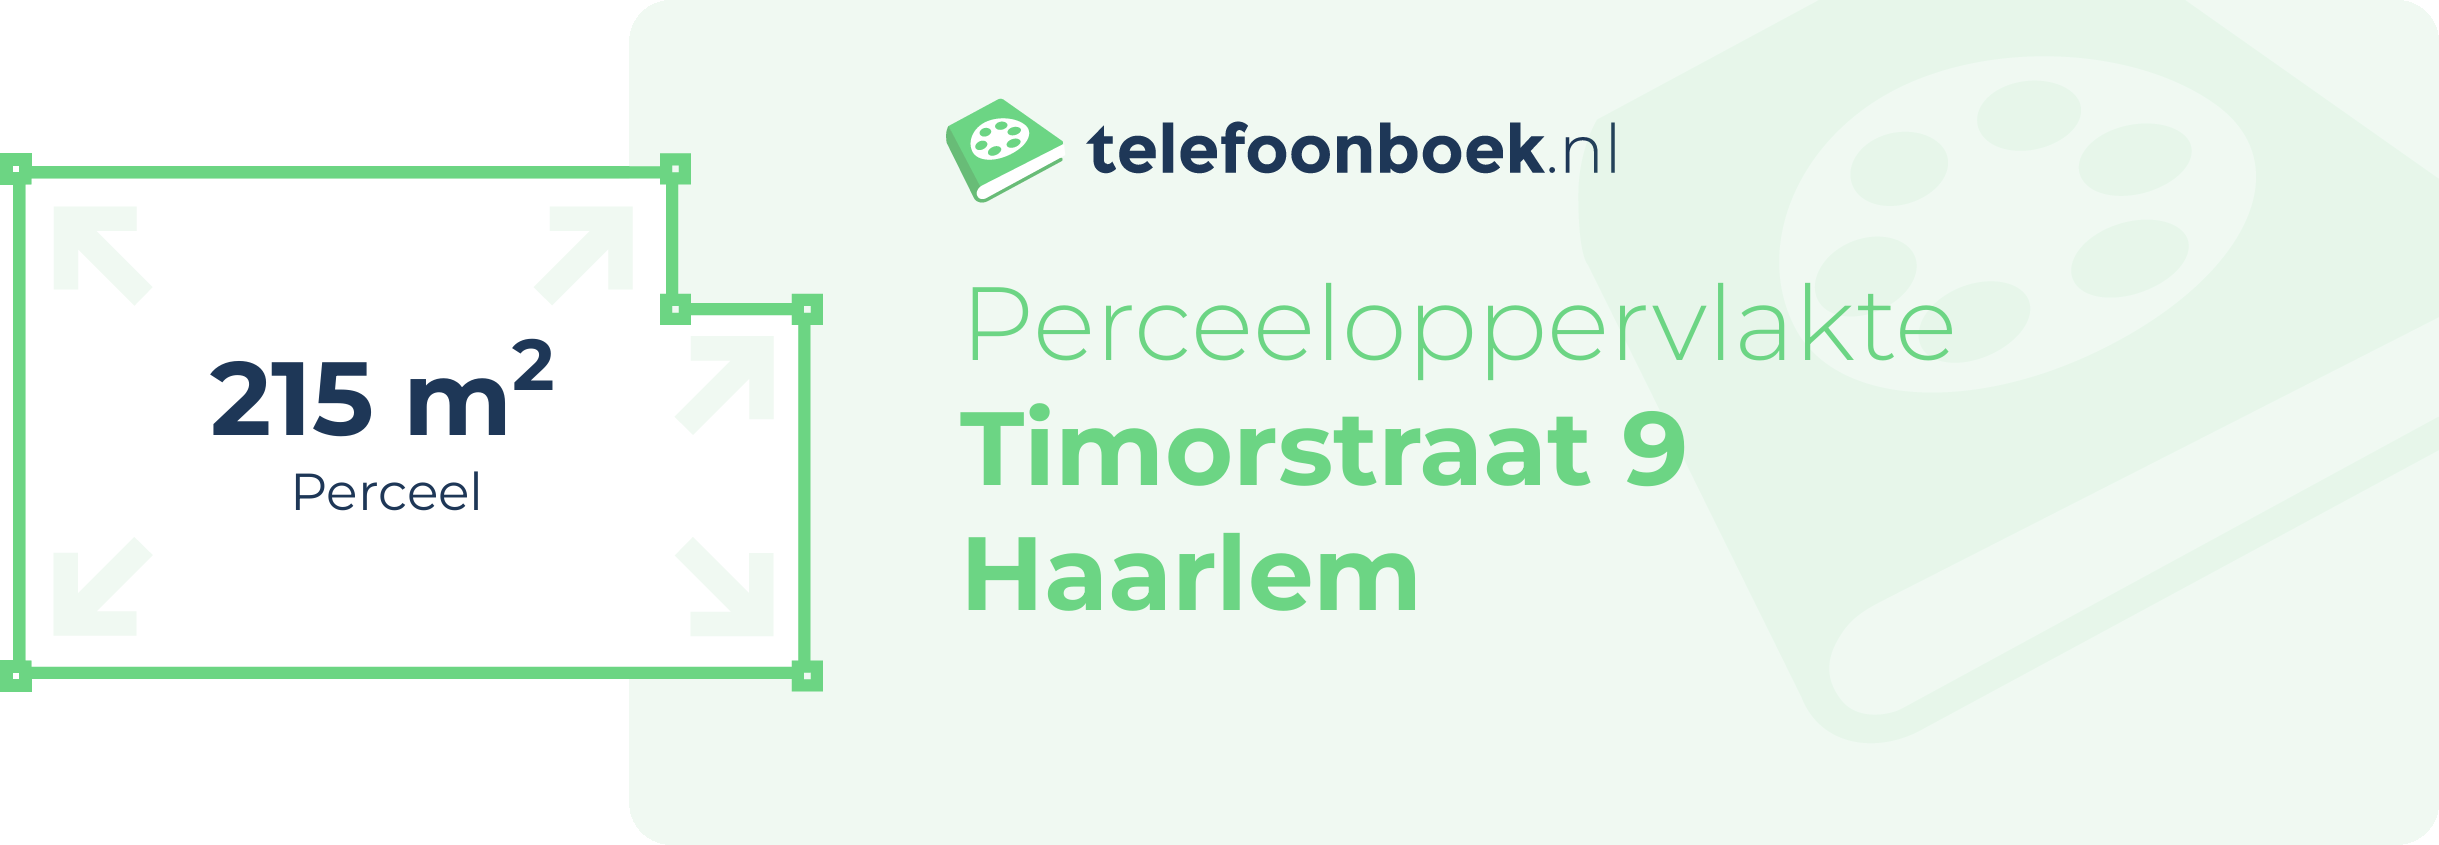 Perceeloppervlakte Timorstraat 9 Haarlem